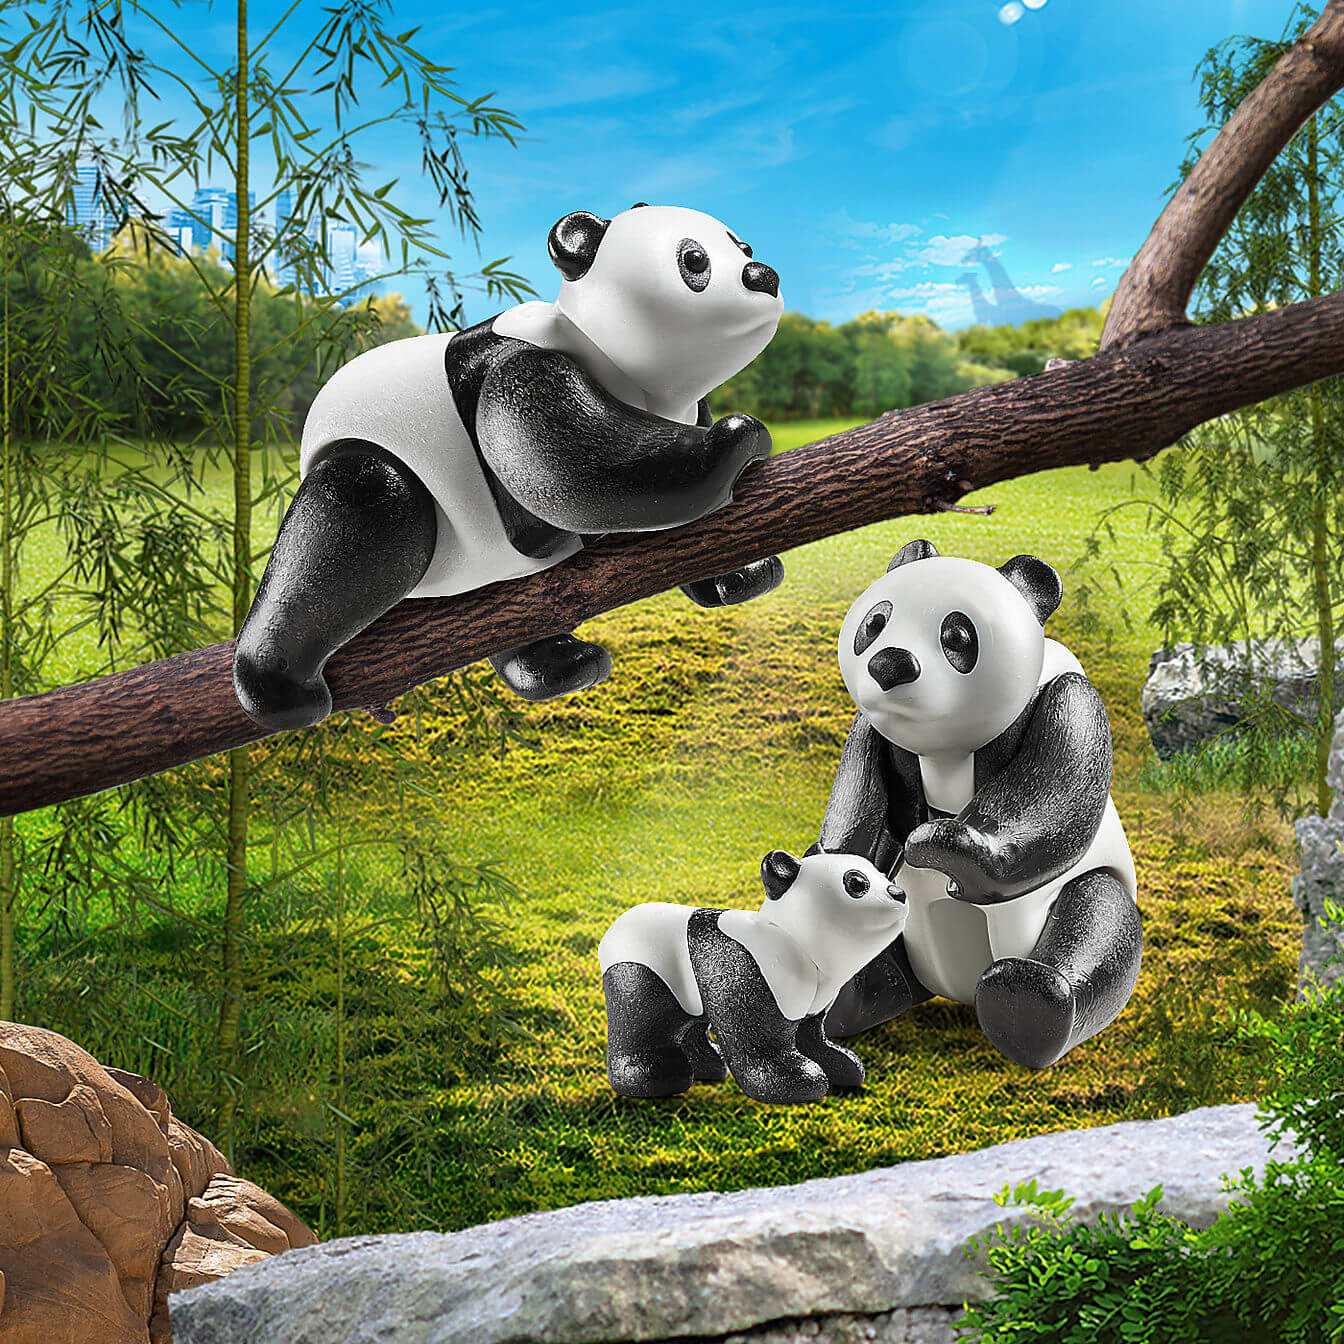 PLAYMOBIL Adventure Zoo Pandas with Cub (70353)